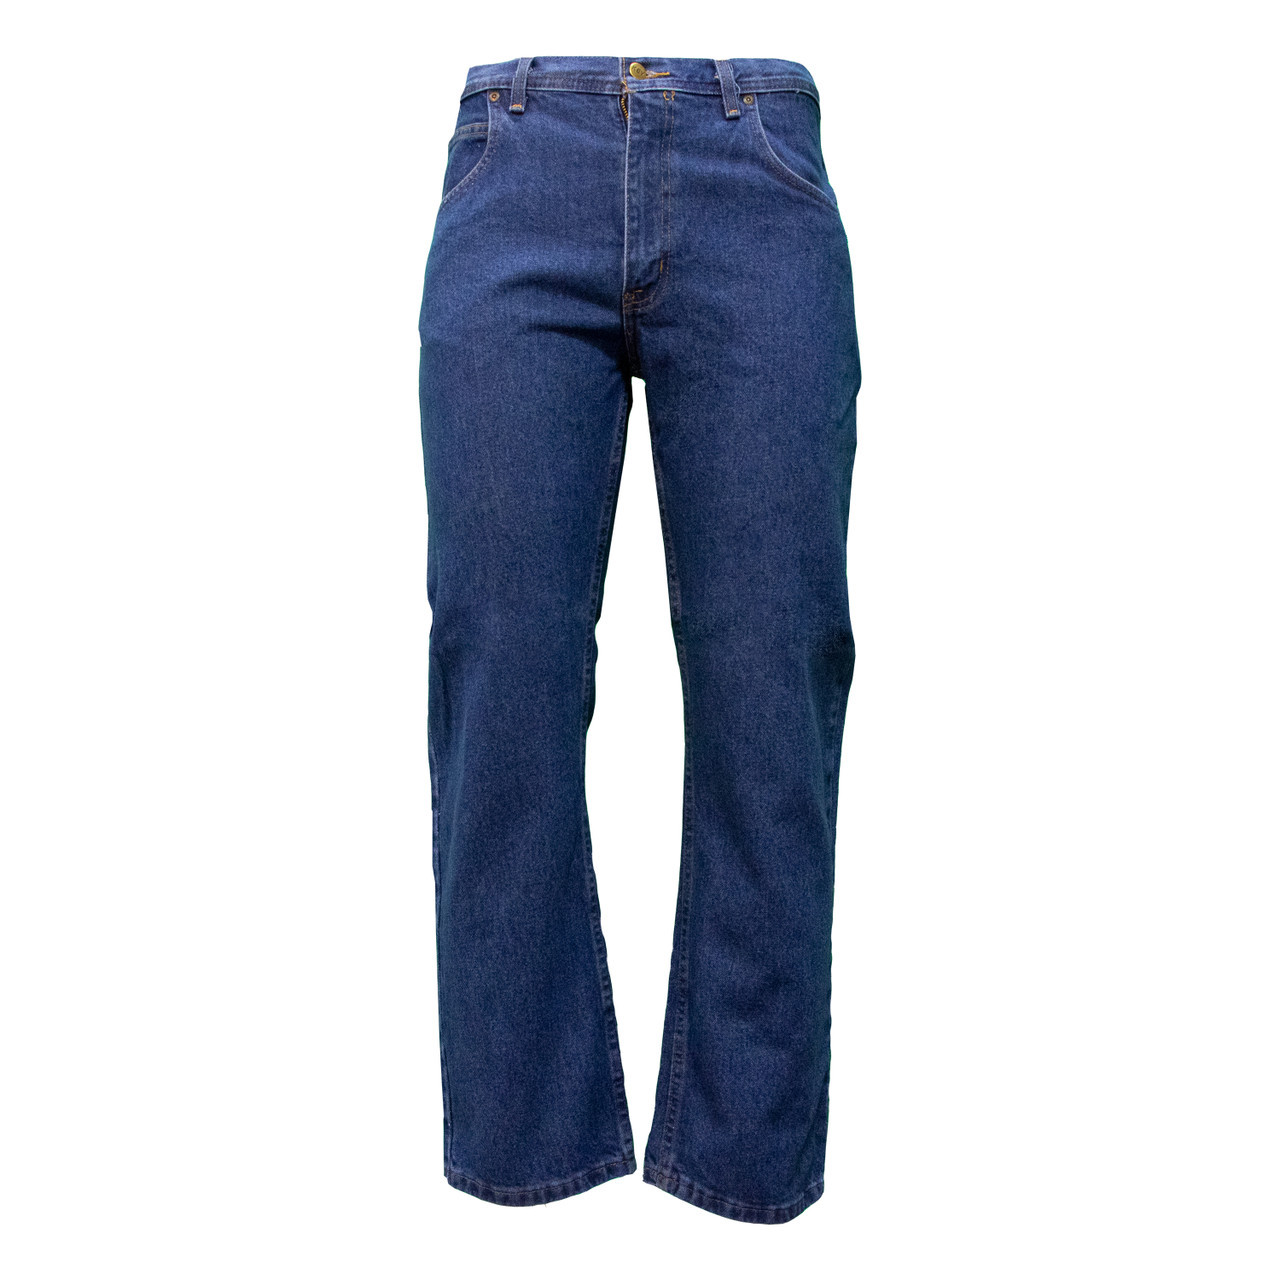 Buy Lacoste Men Blue Slim Fit Stretch Cotton Denim Jeans Online - 873594 |  The Collective